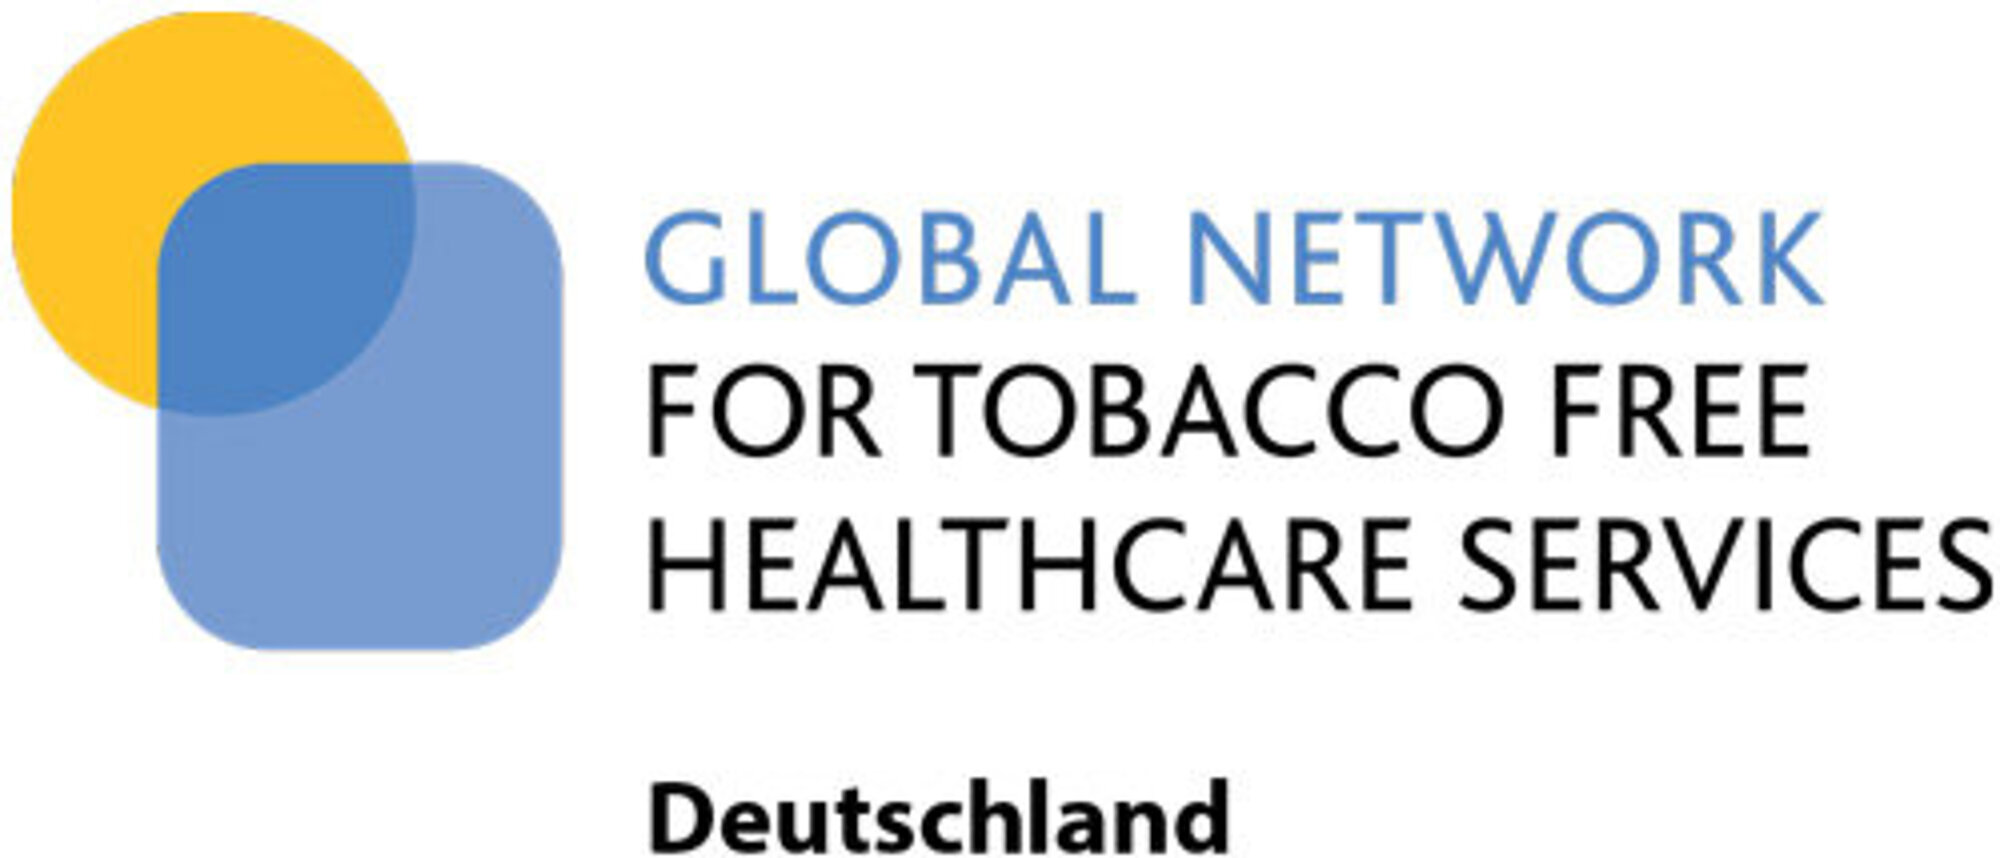 Logo von Global Network, for tobacco free healthcare services Deutschland. Links ist ein gelber Kreis und ein blaues Viereck mit abgerundeten Ecken zu sehen.